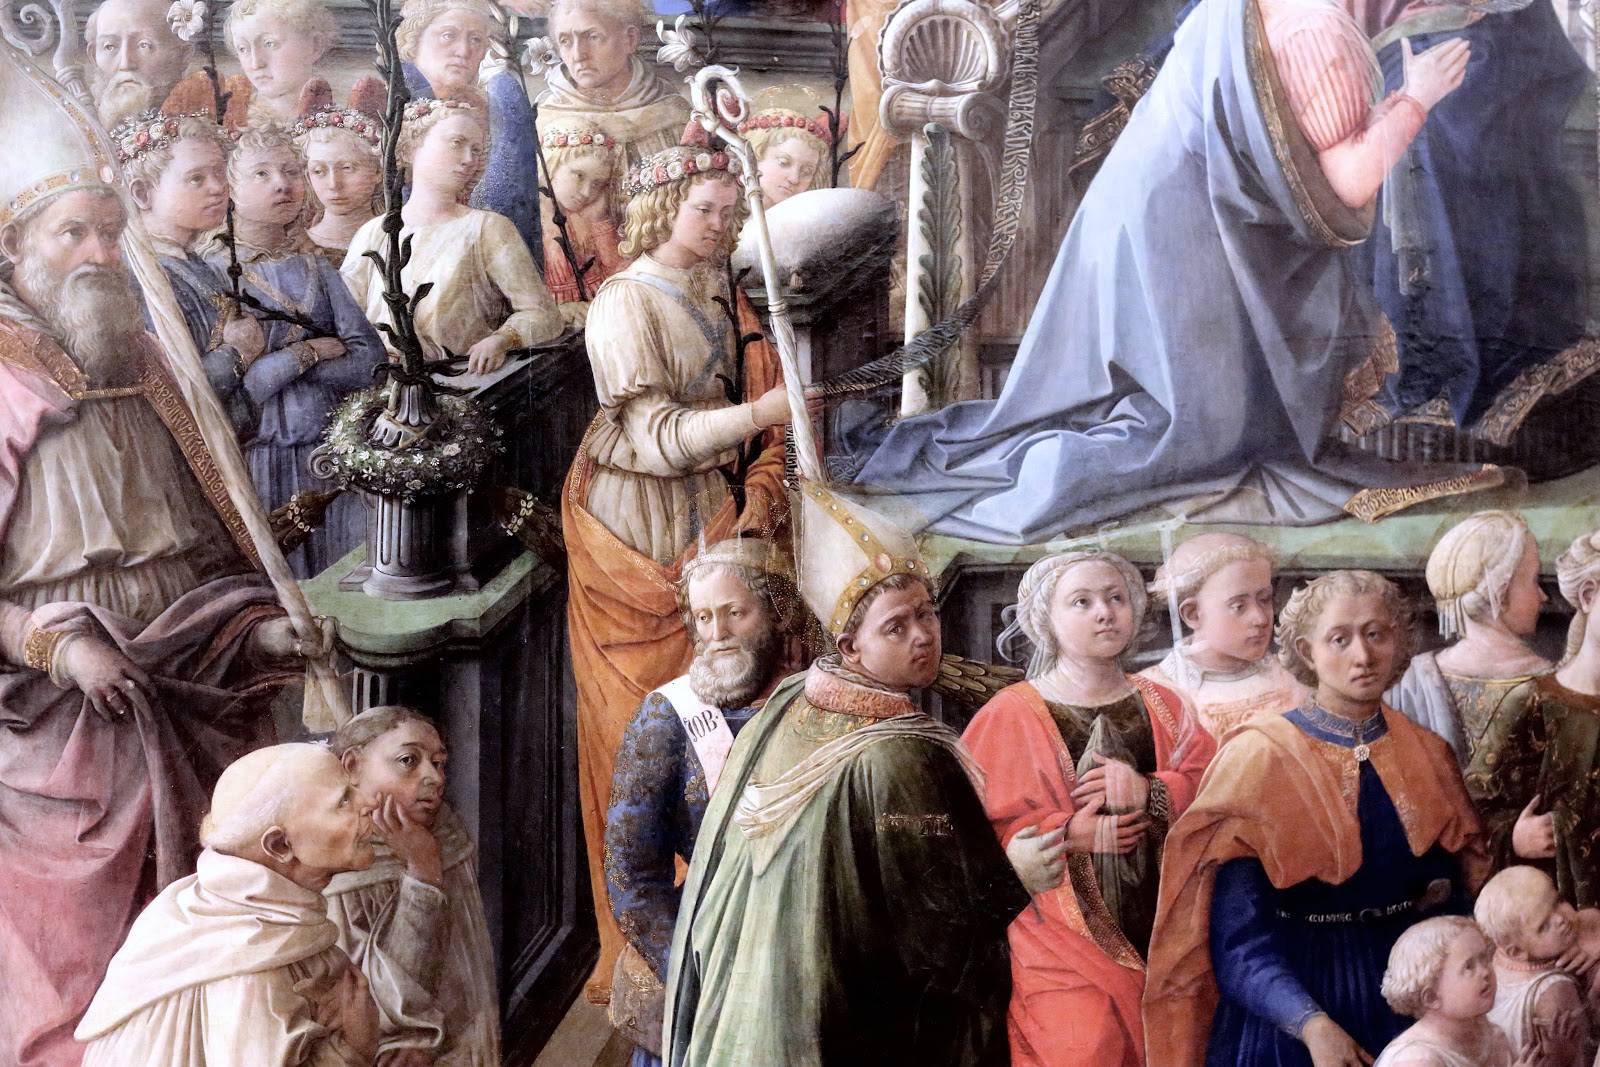 Filippino+Lippi-1457-1504 (120).jpg